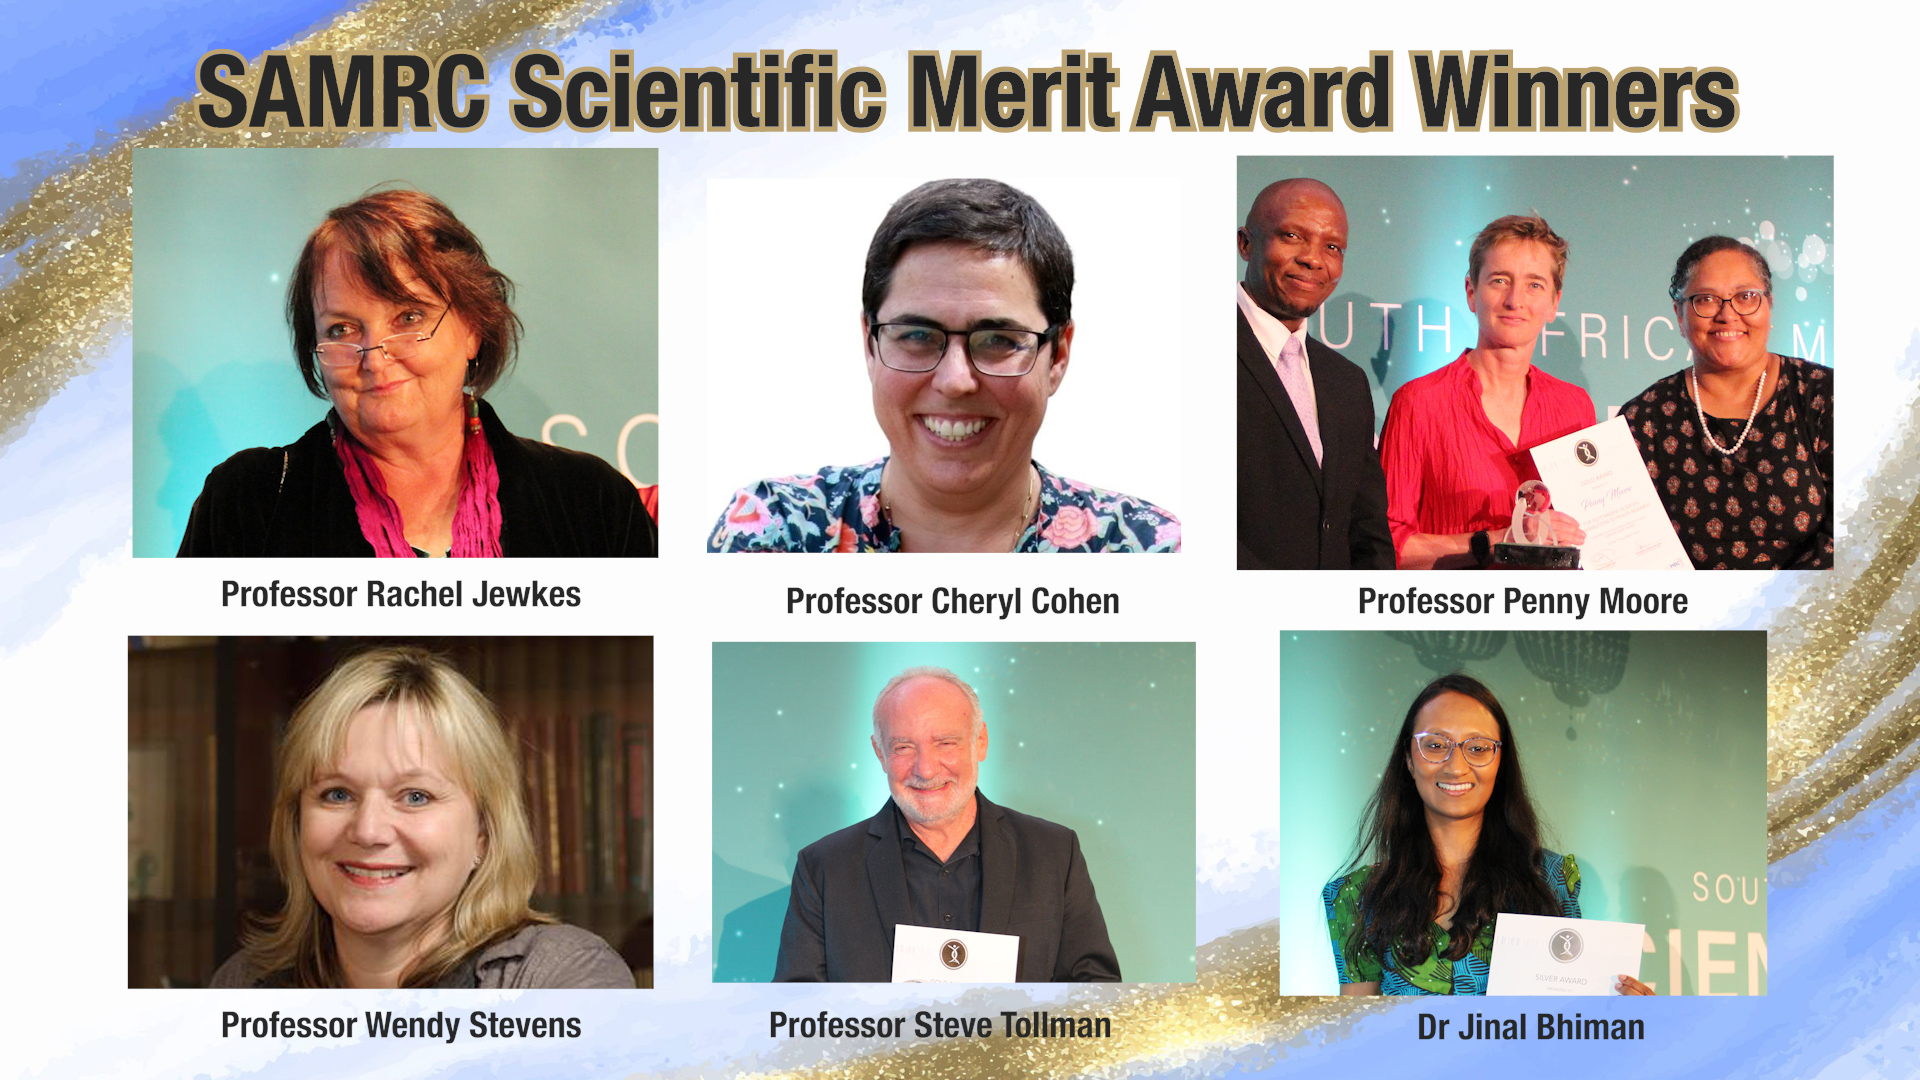 SAMRC Scientific Award Winners Wits 600x300